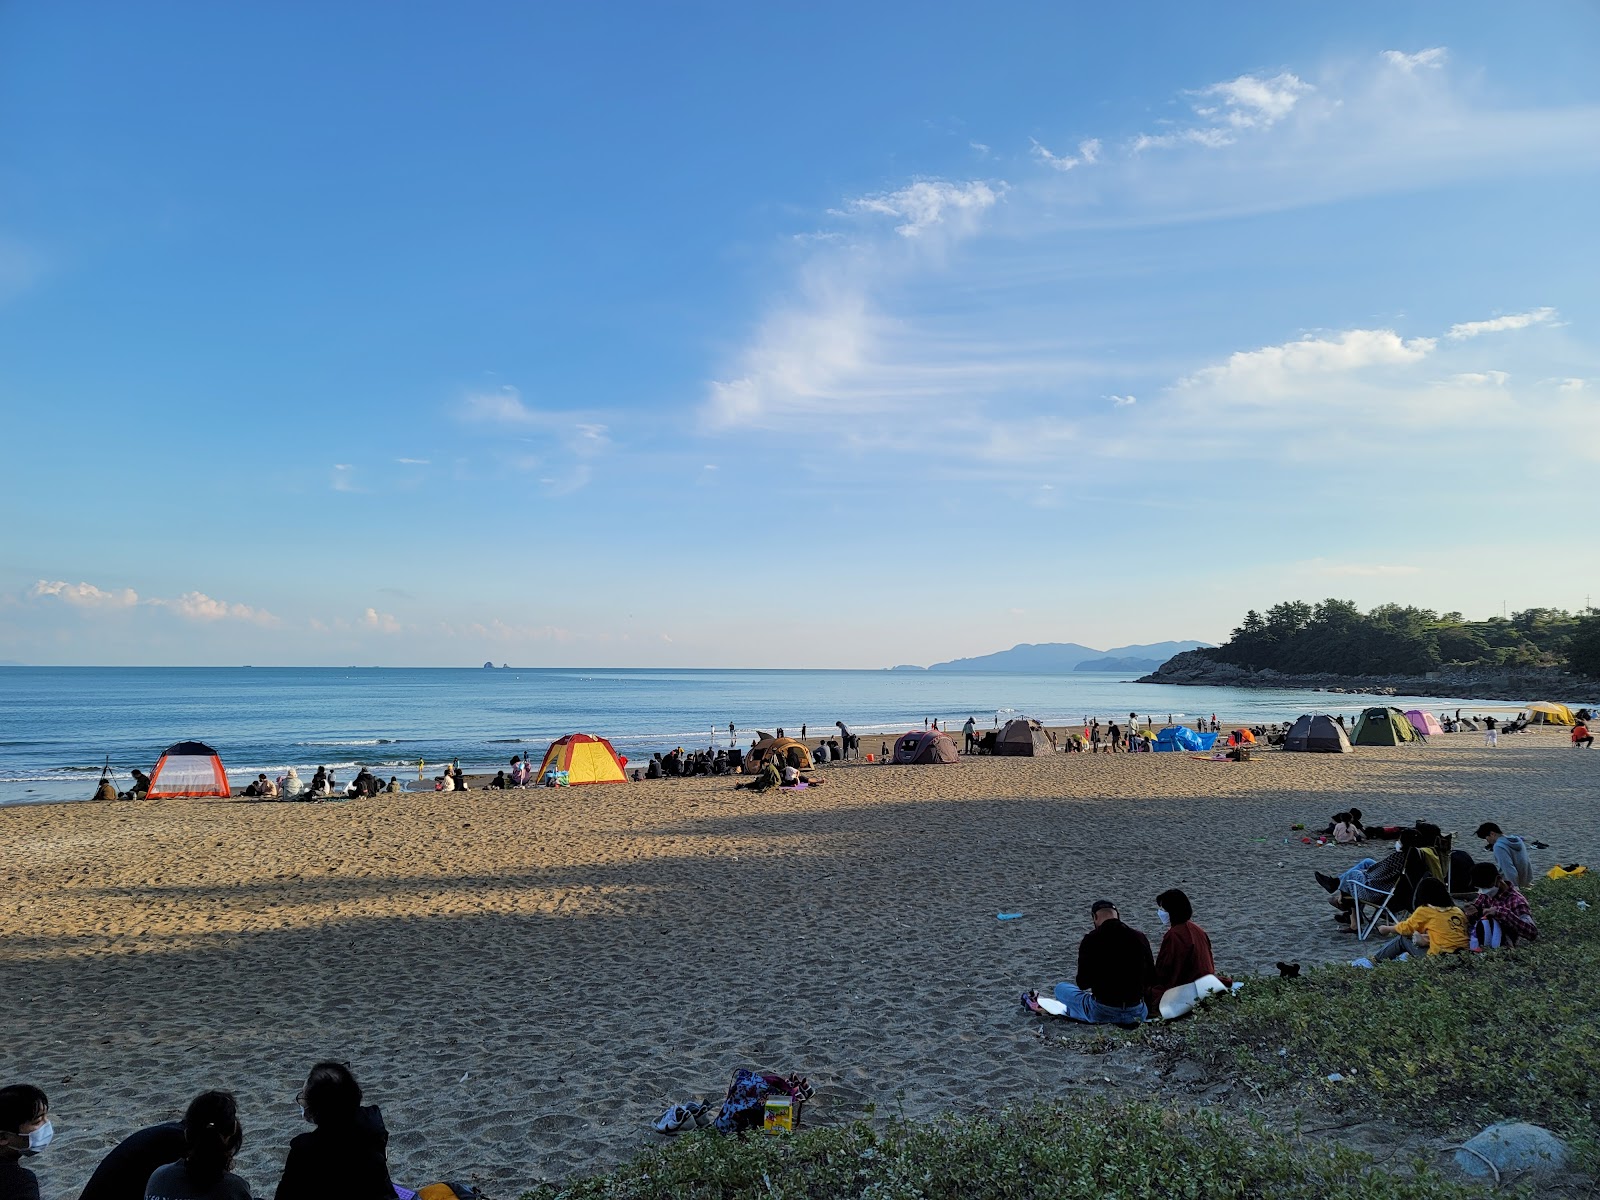 Zdjęcie Namyeol Sunrise Beach - popularne miejsce wśród znawców relaksu